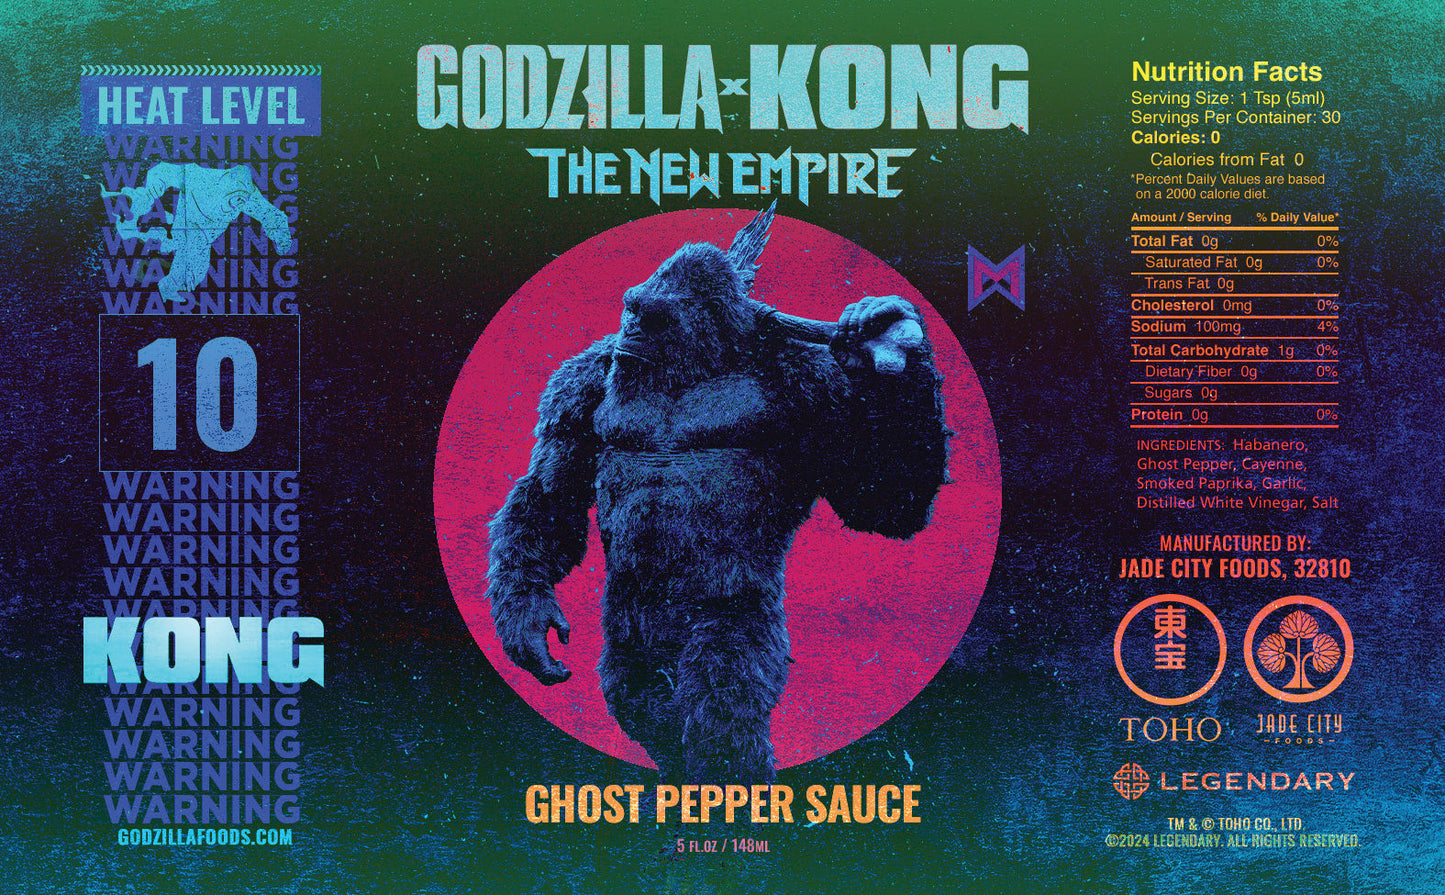 Kong's Ghost Pepper Sauce